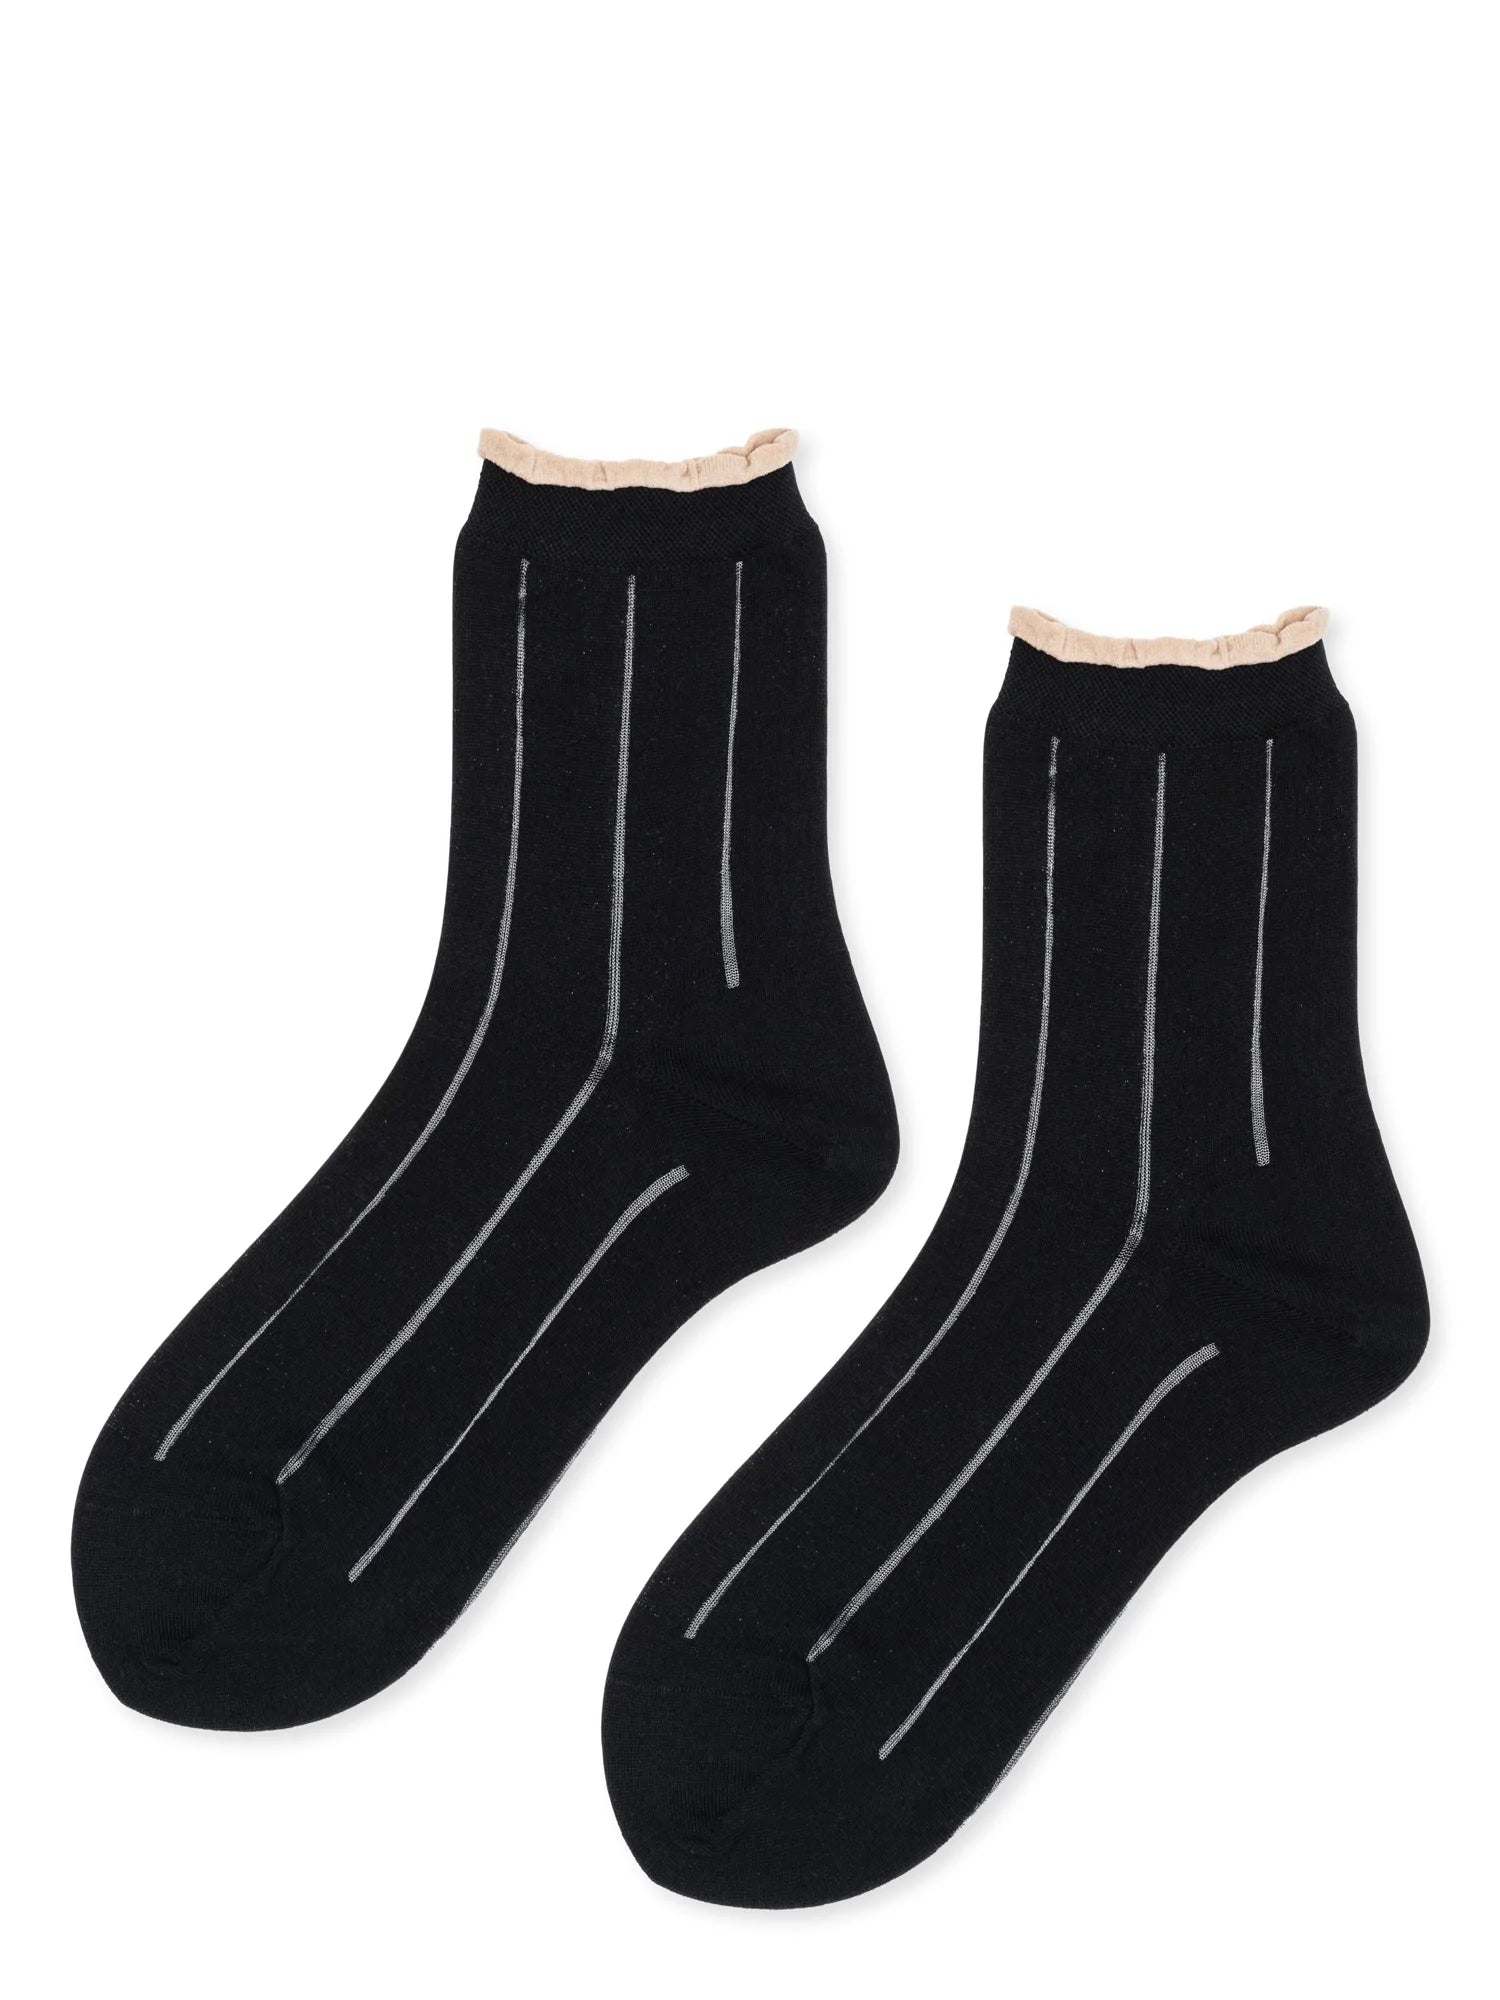 Sheer Socks